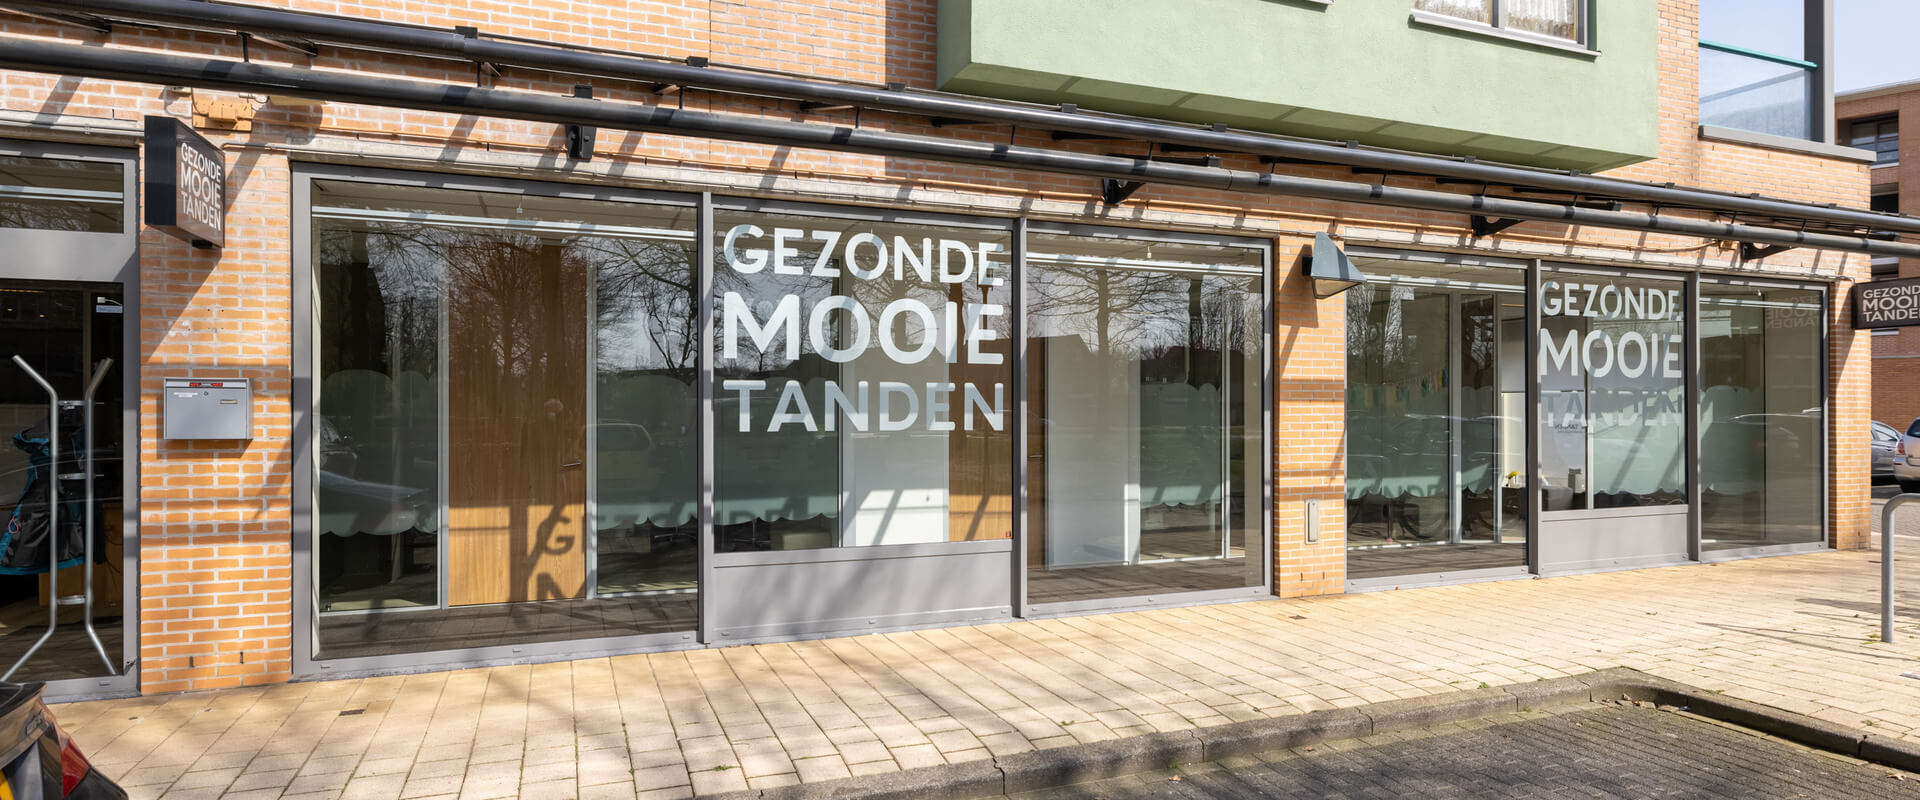 Gezonde Mooie Tanden tandarts Haagse Beemden